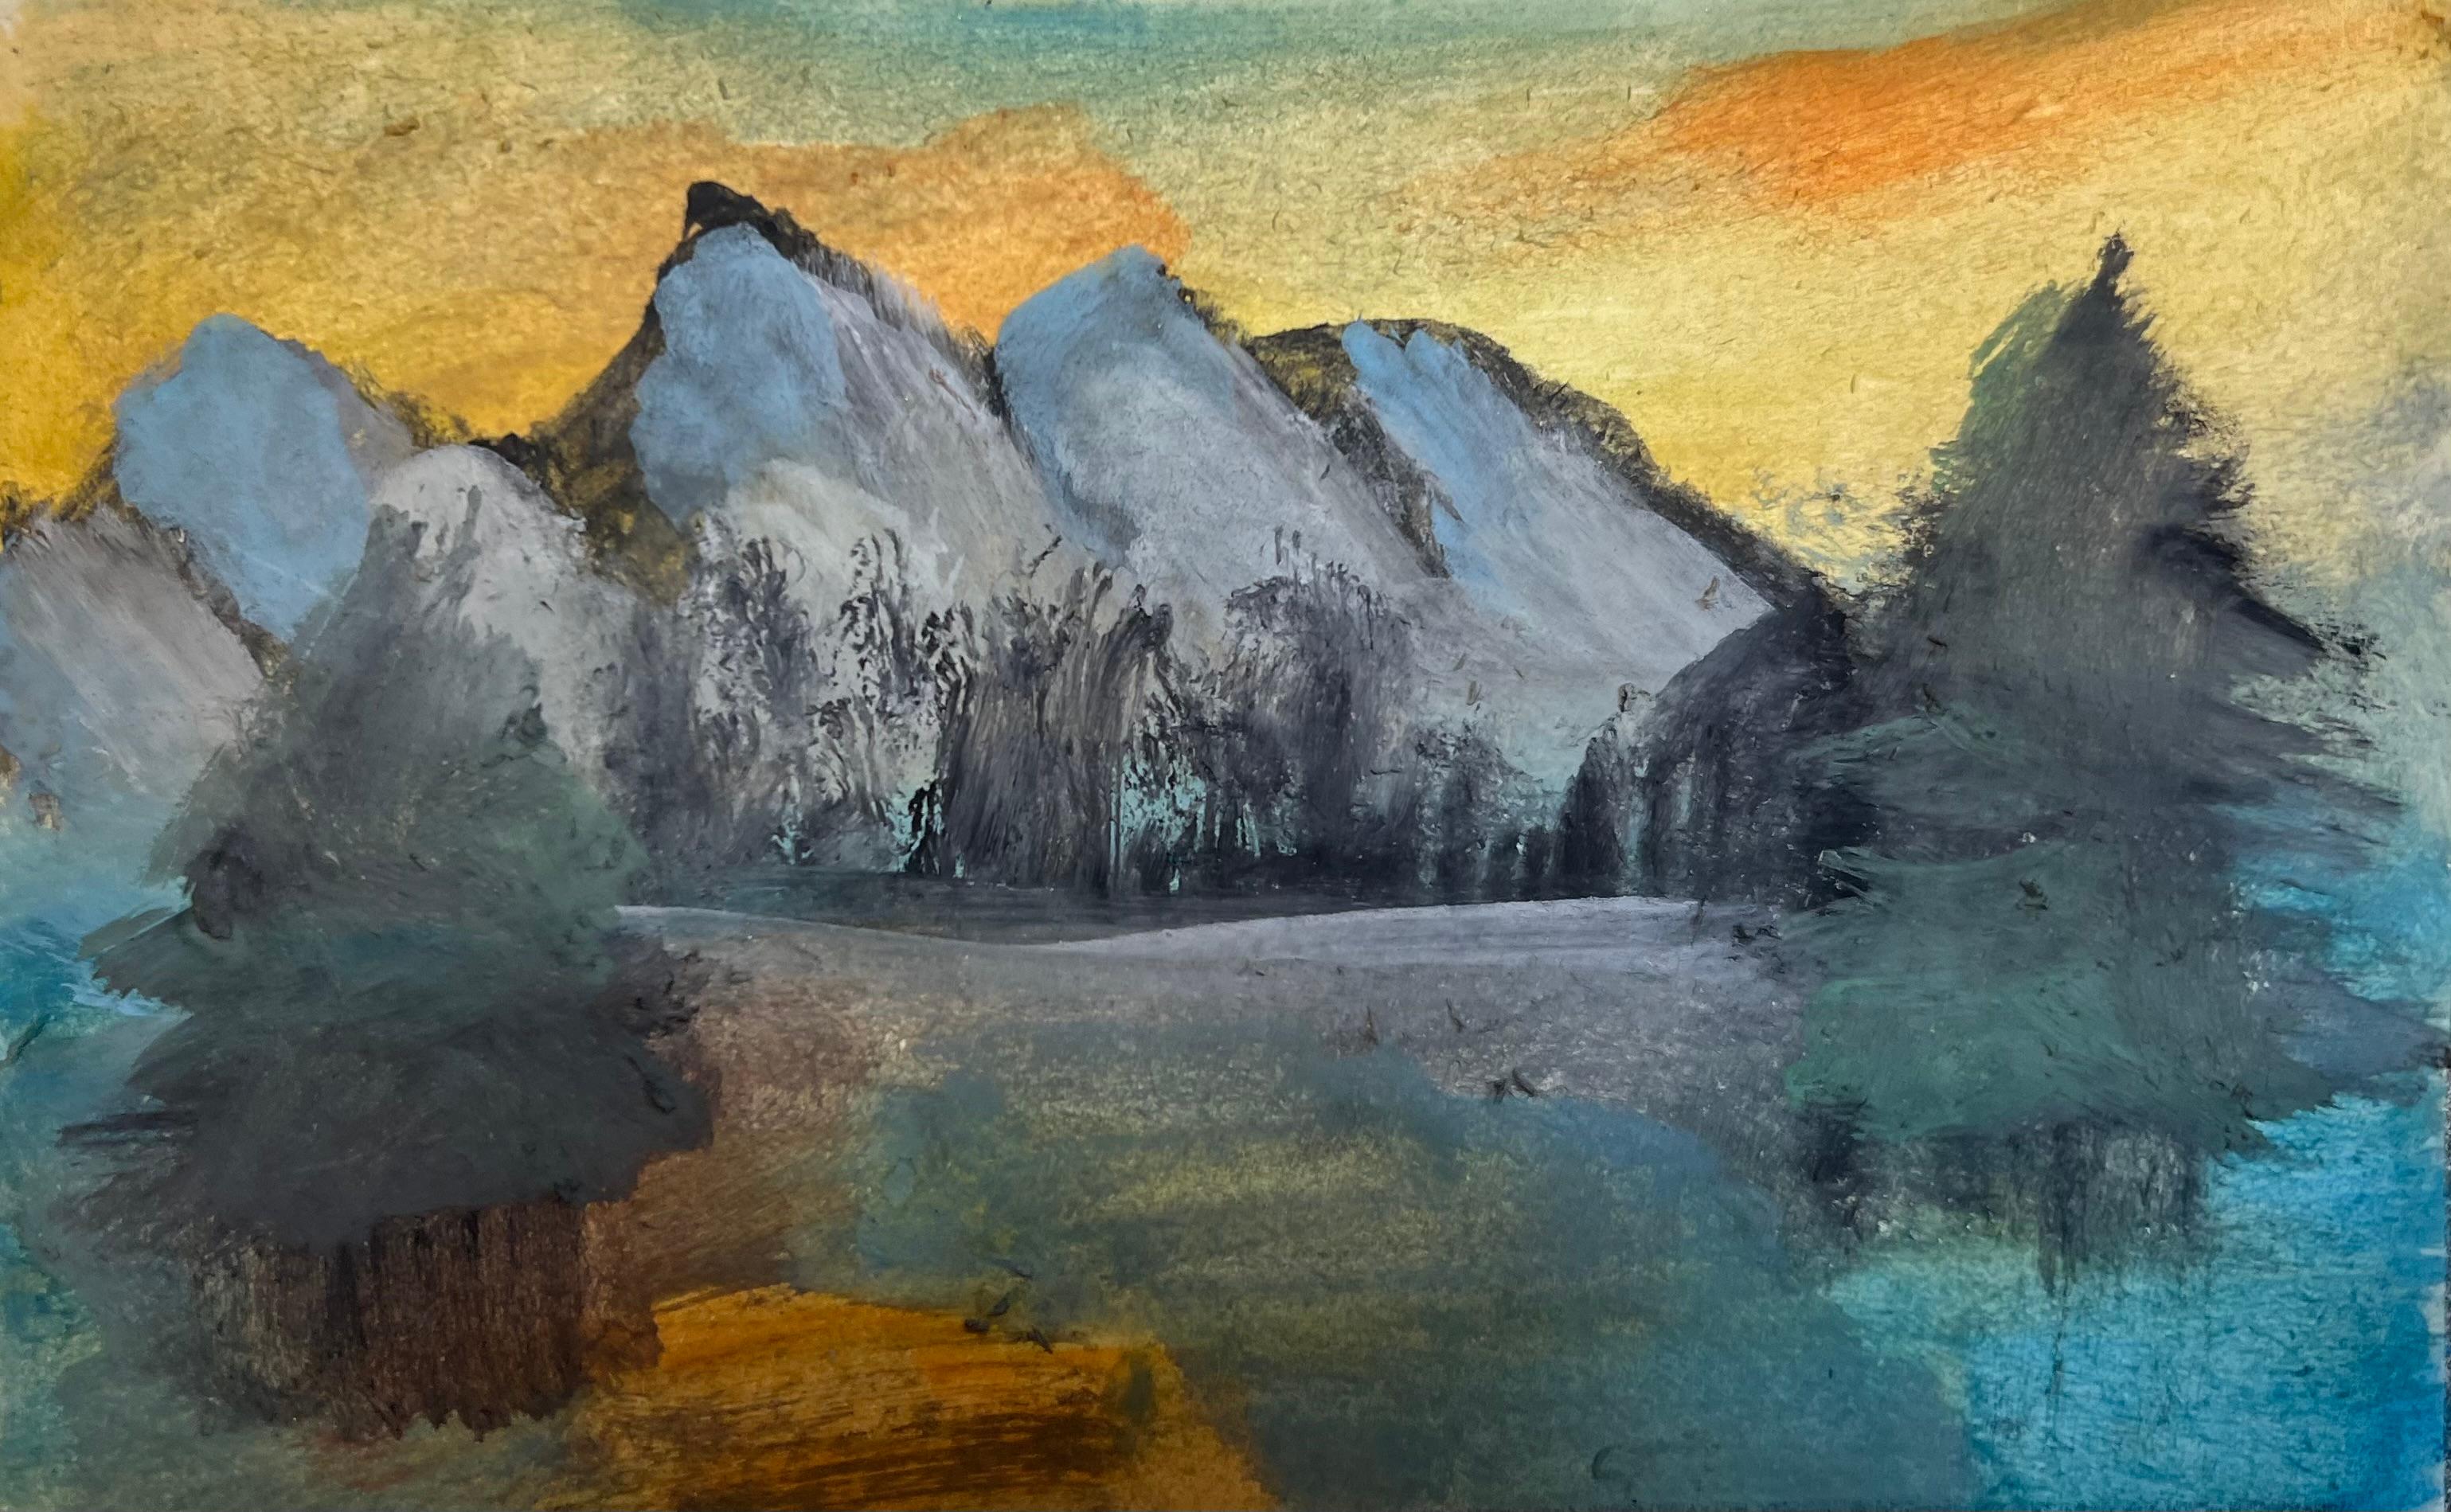 Peinture de paysage abstrait de 24" x 30" pouces par Angela Afifi

Non encadré. Livré roulé en tube